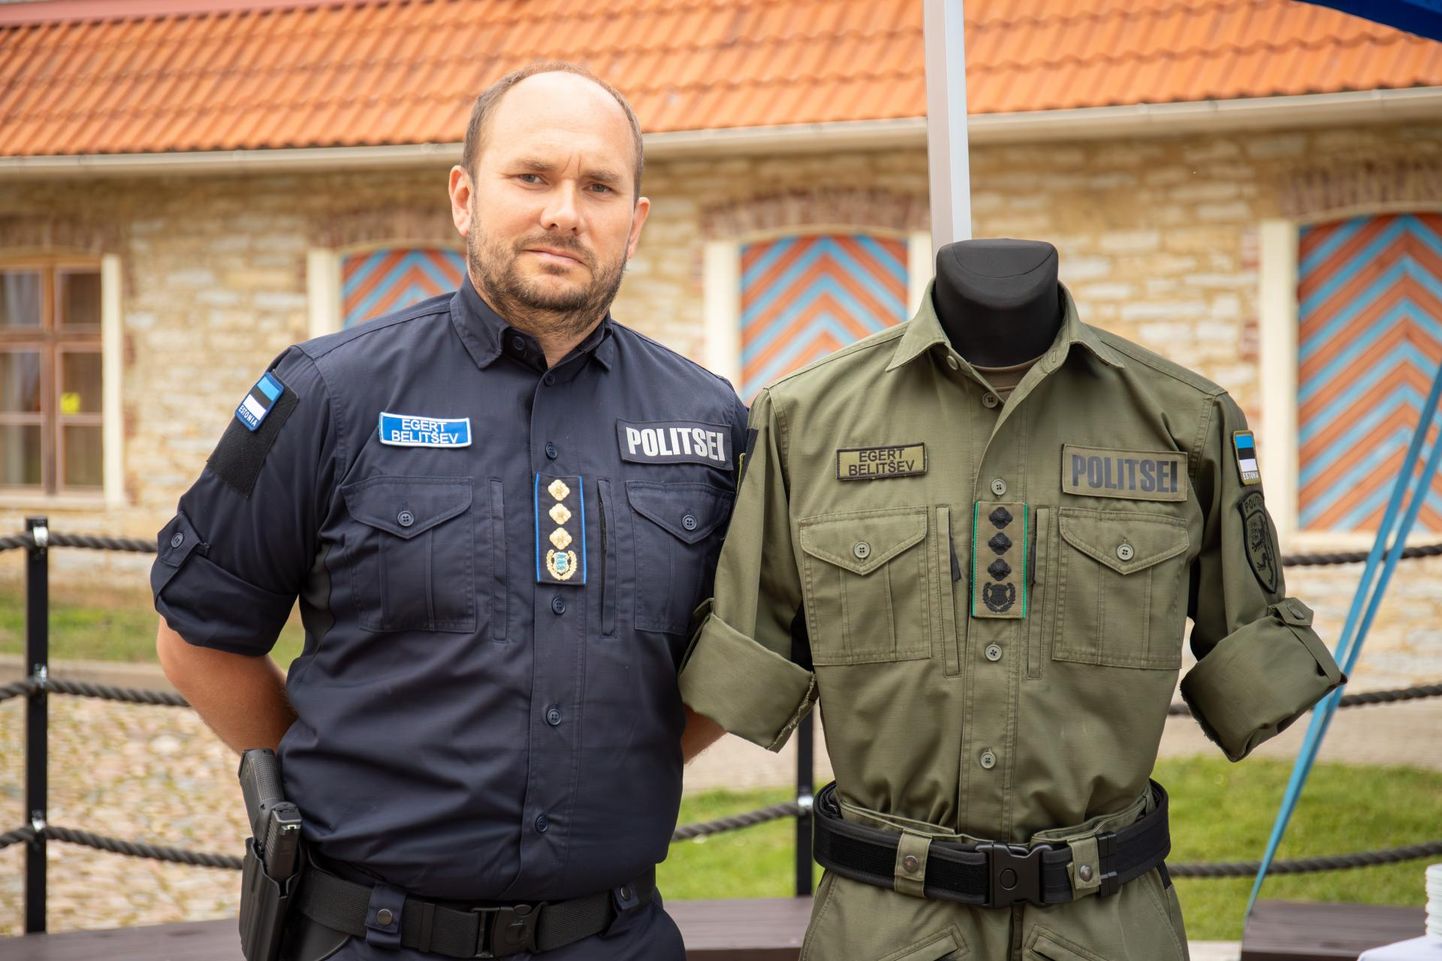 Politsei- ja piirivalveameti peadirektor Egert Belitšev annetas politseimuuseumile neli aastat kantud taktikalise vormi.